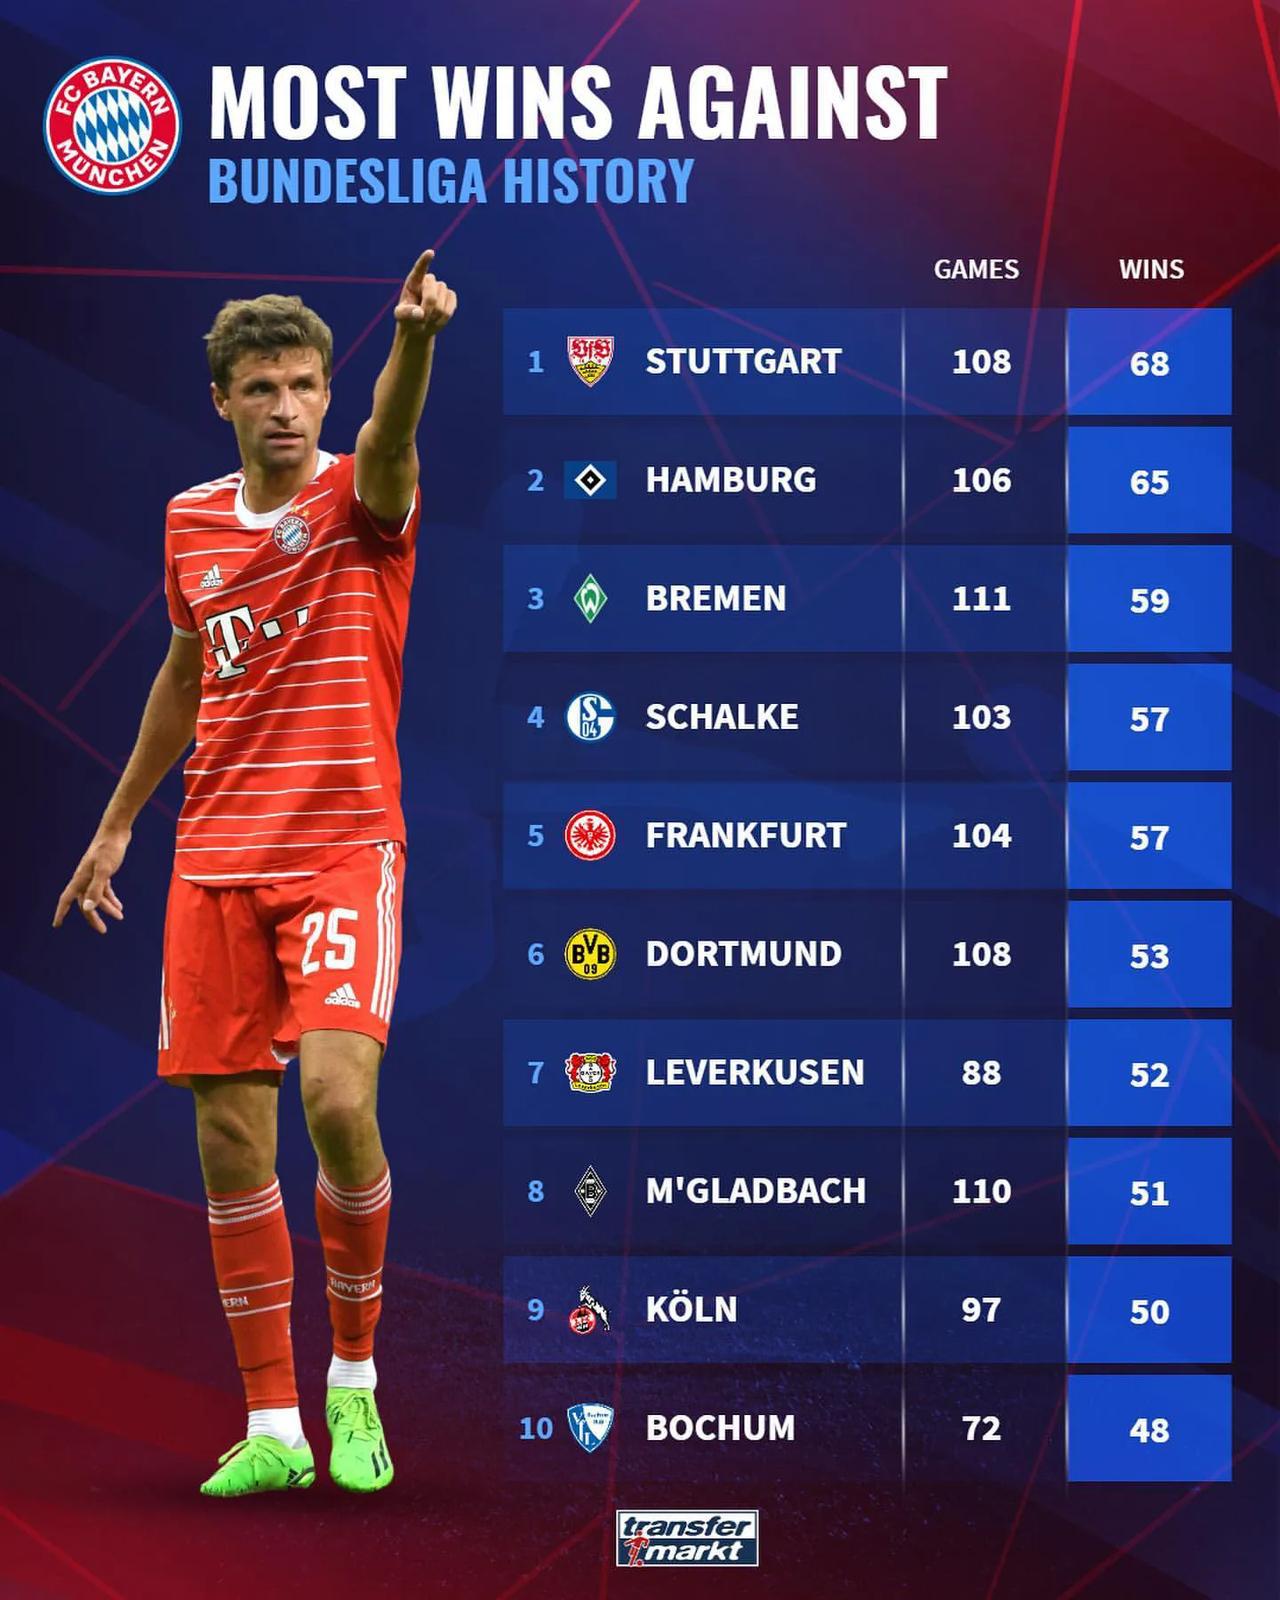 德甲历史拜仁慕尼黑击败次数最多的球队，斯图加特68次、汉堡65次、不来梅59次；(1)